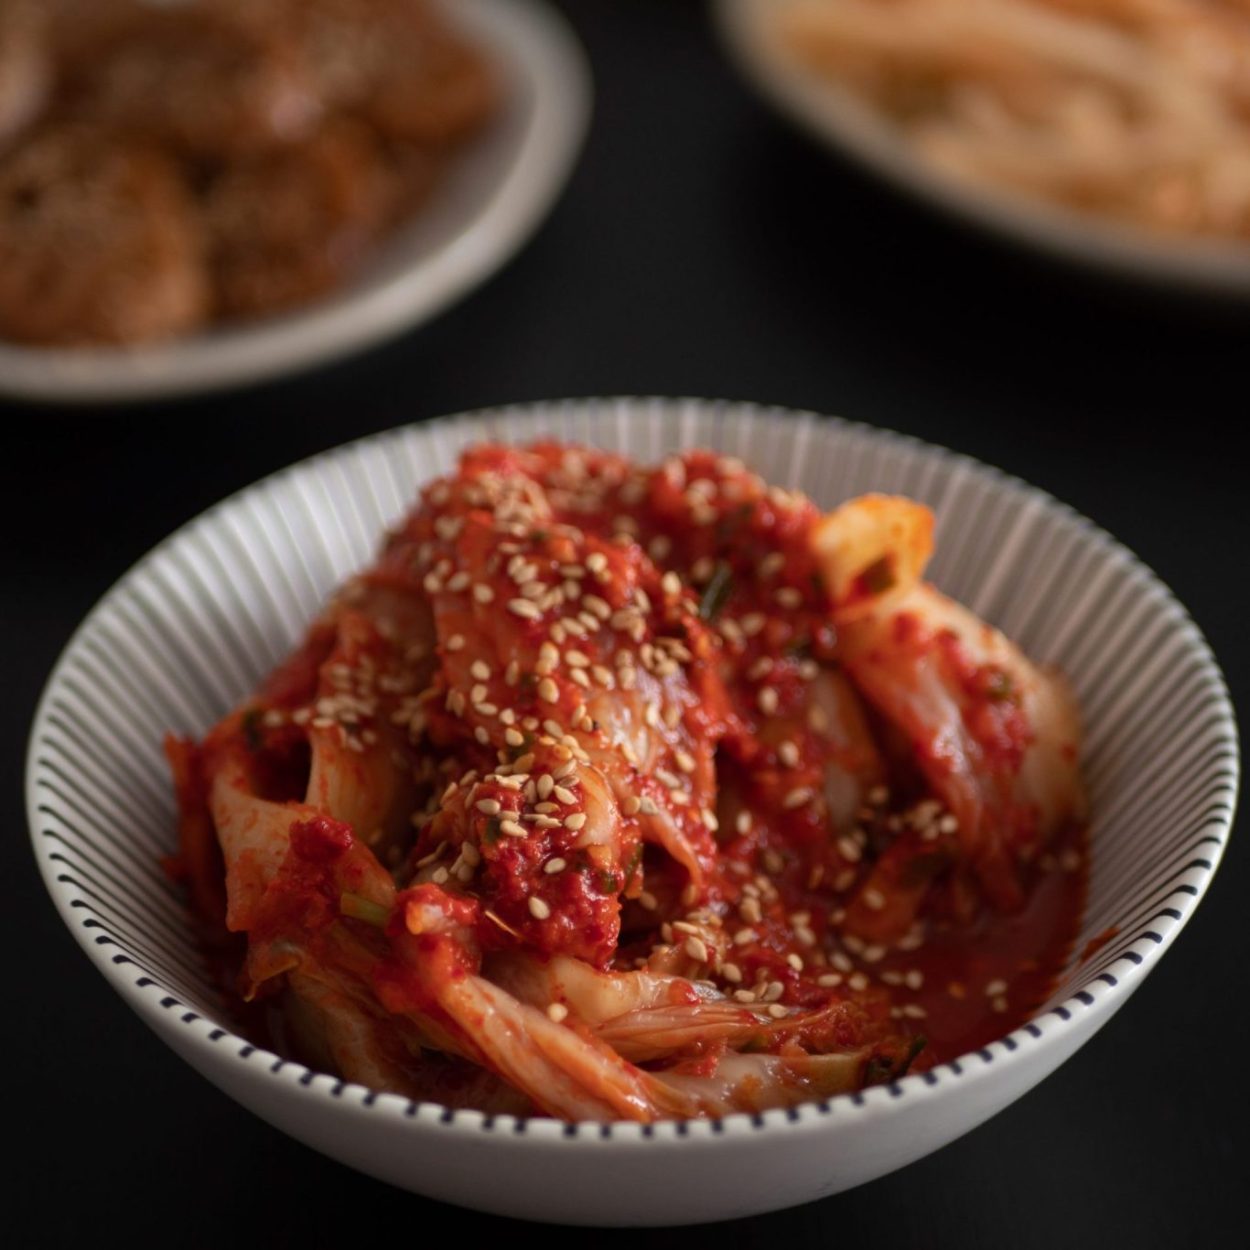 Kimchi traditionnel- Chou chinois fermenté – Recette coréenne